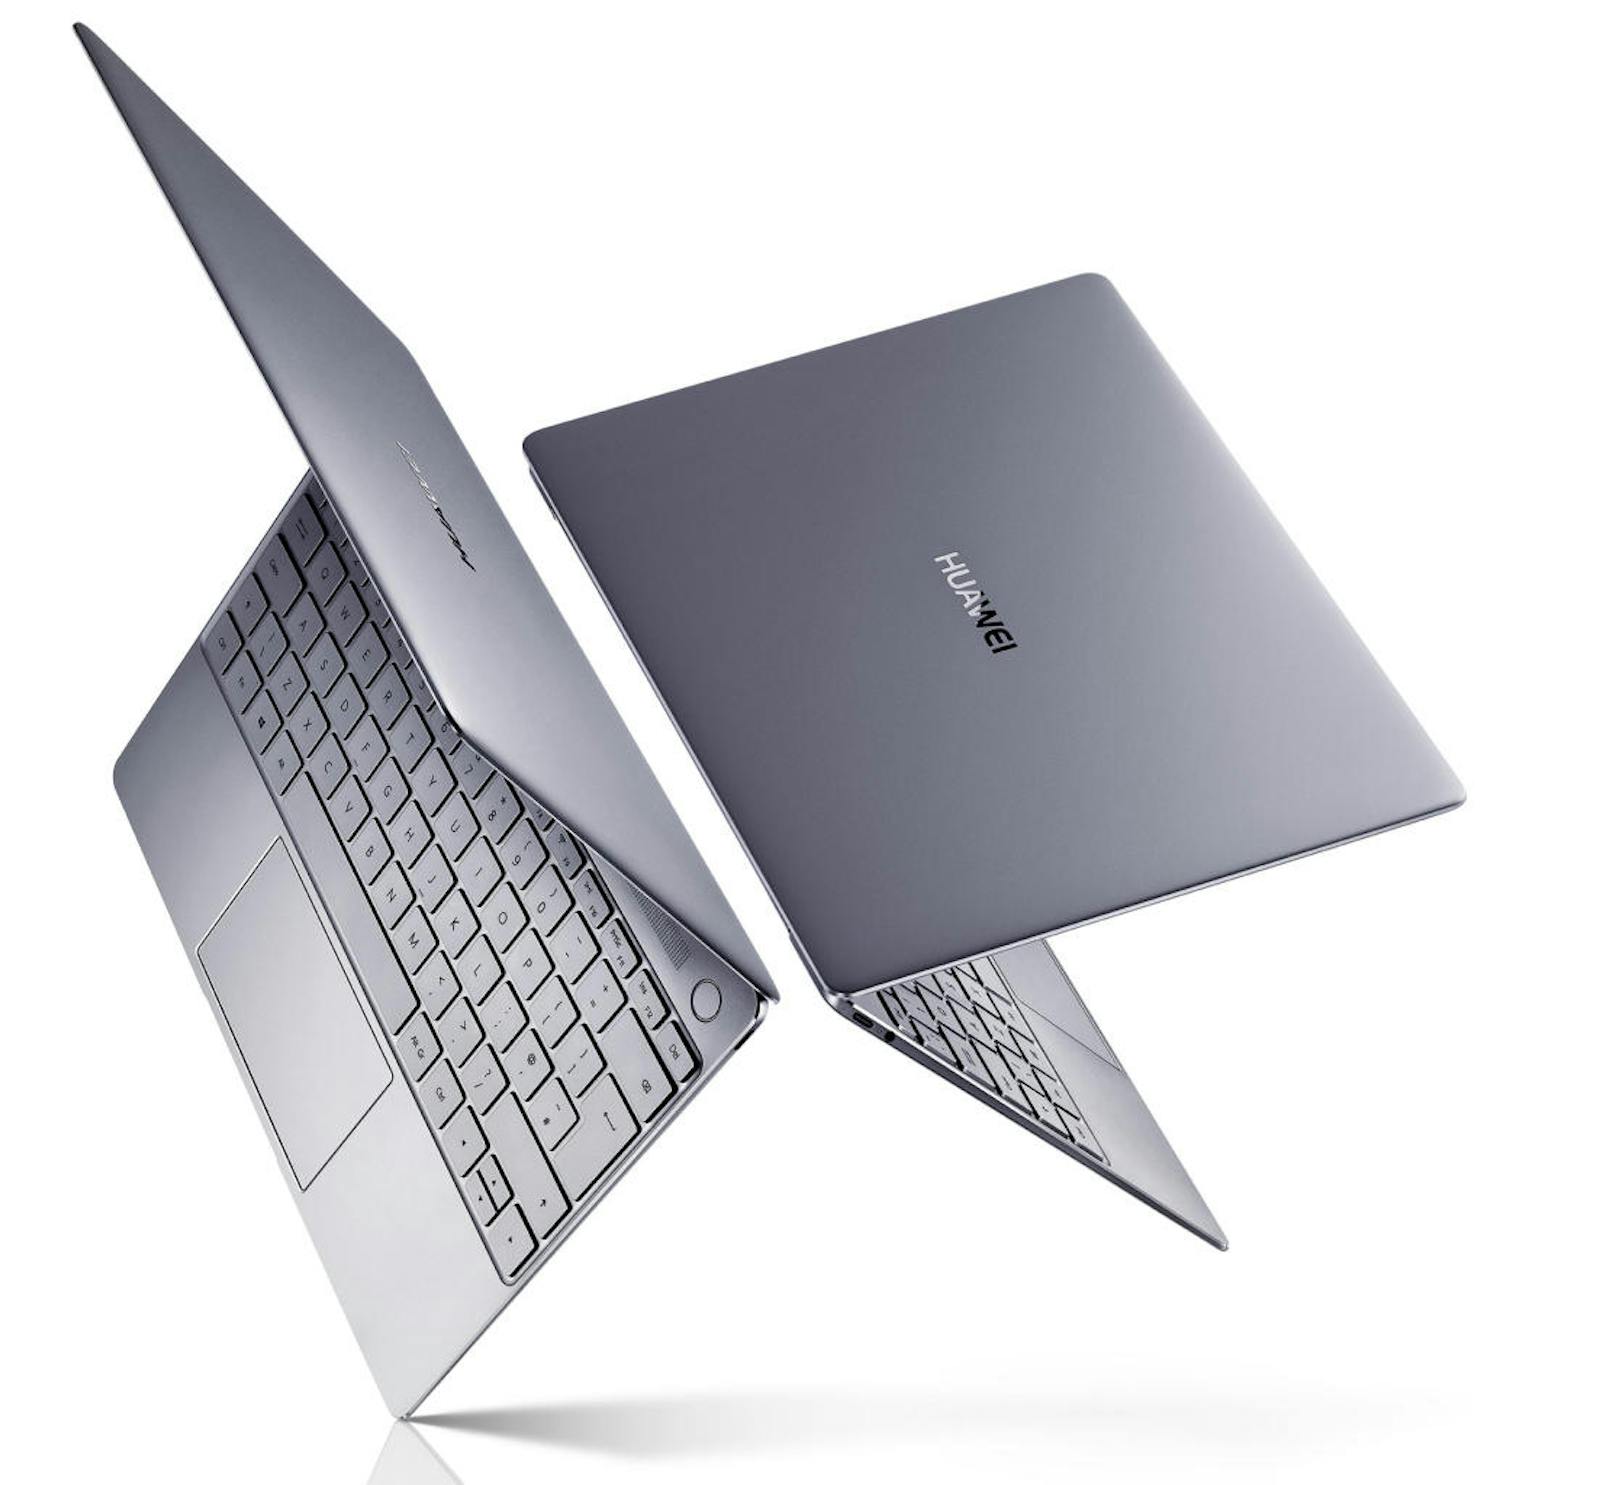 Insgesamt ist das MateBook X ein ernstzunehmendes Highend-Gerät, das dem Apple MacBook, mit dem es den direkten Vergleich sucht, in einigen Belangen überlegen ist.